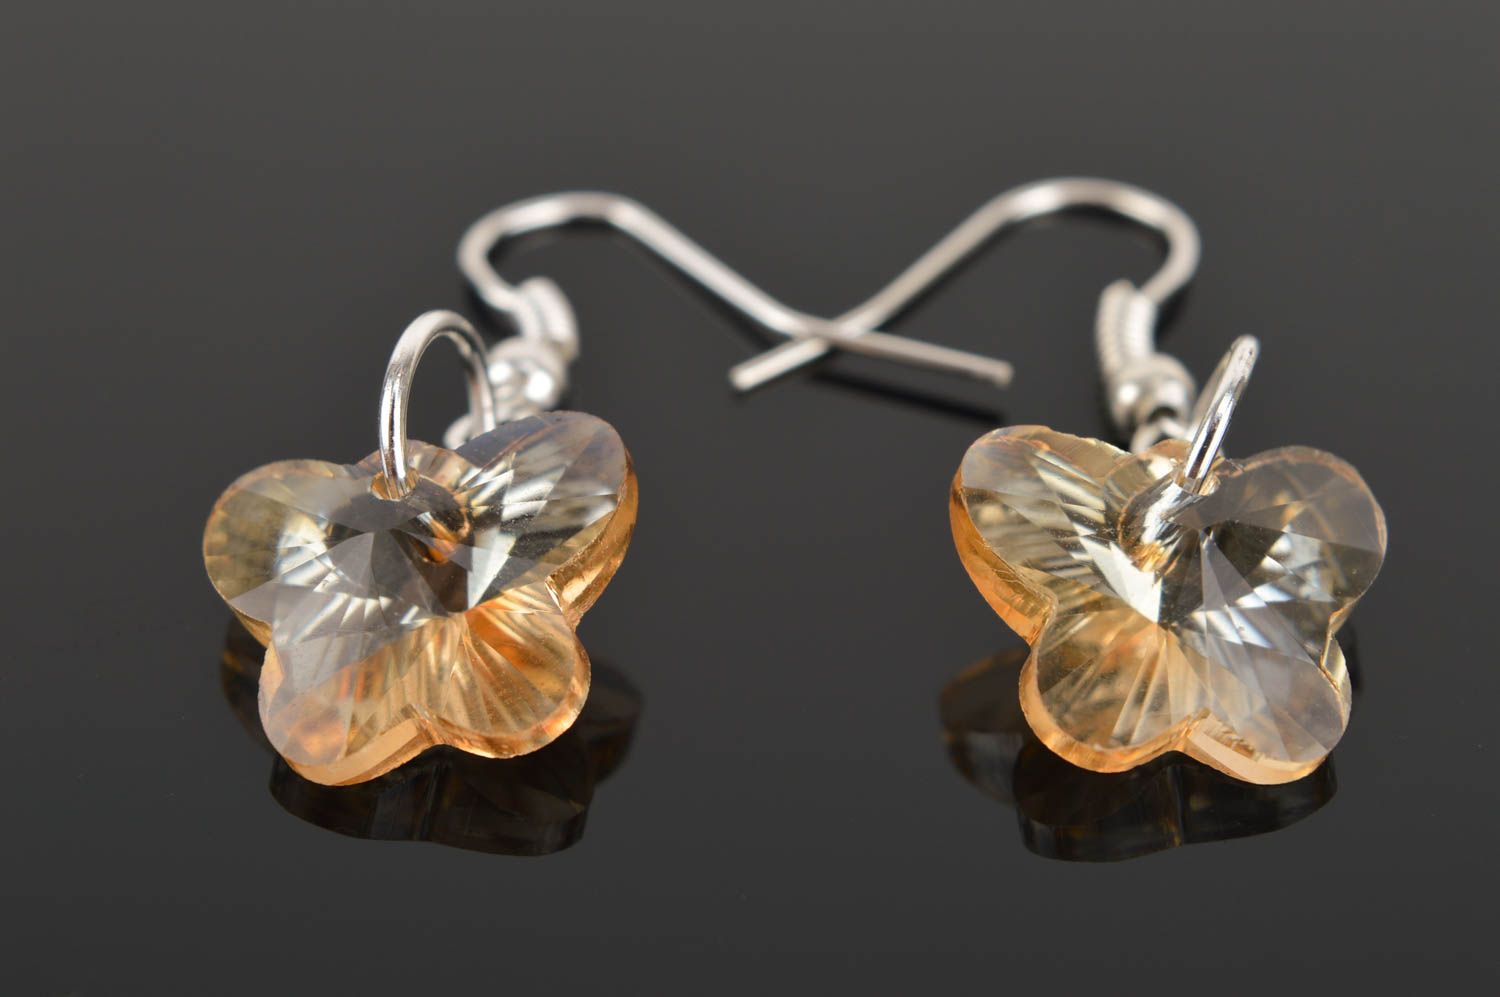 Handmade earrings unusual jewelry designer accessory glass earrings gift ideas photo 3